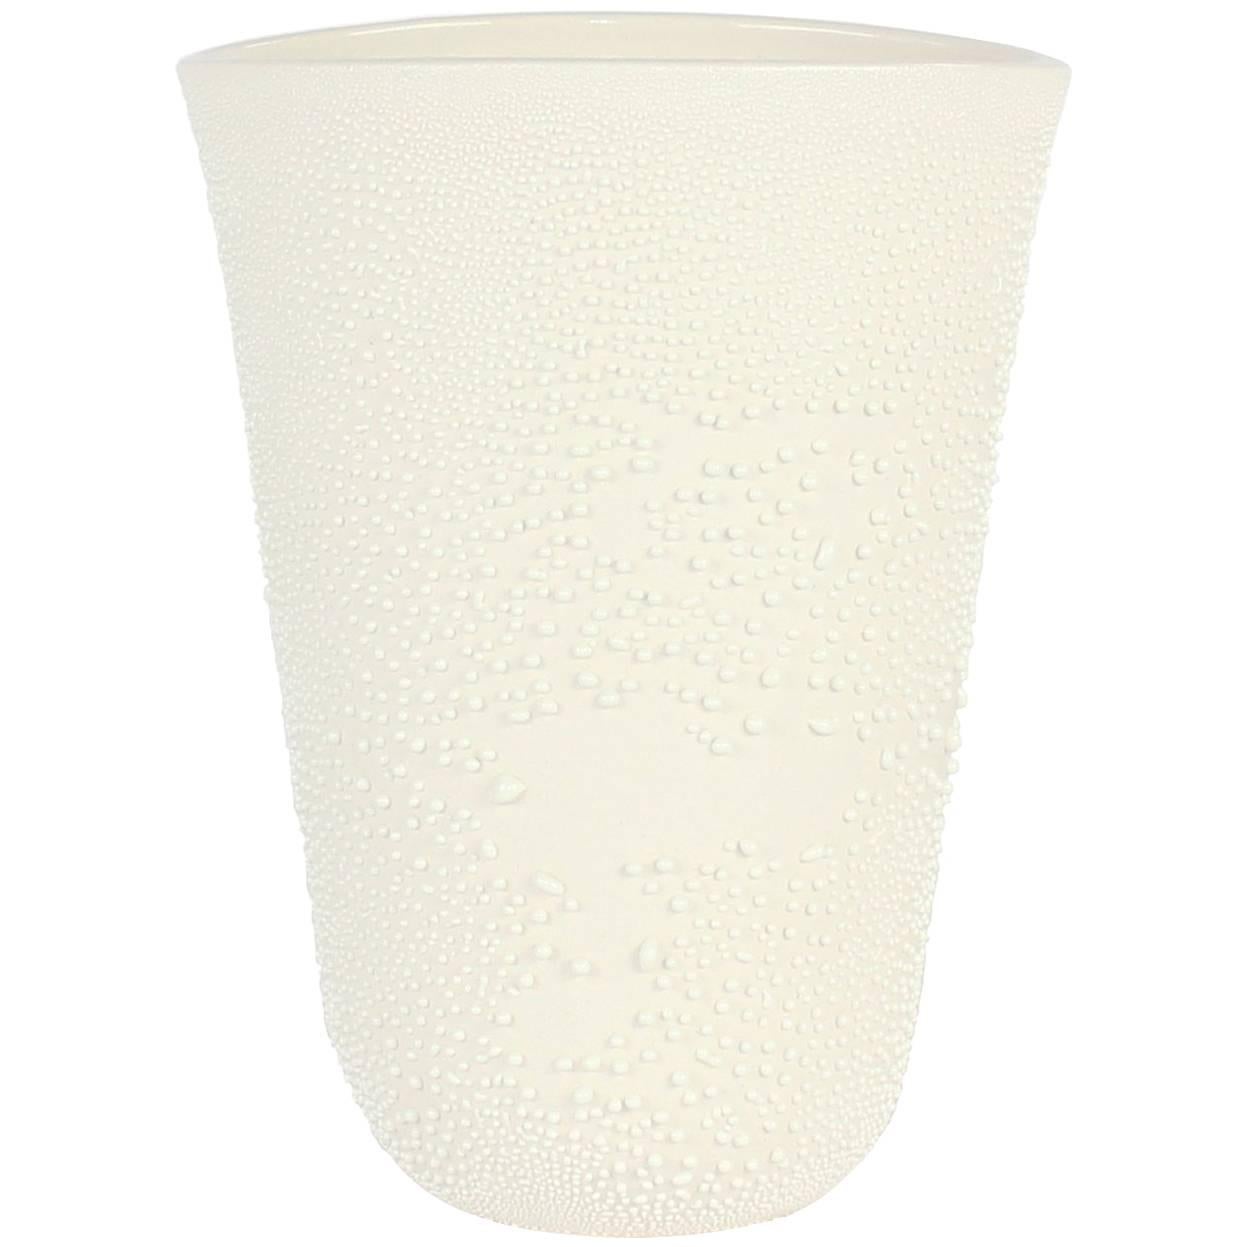 Contemporary Small Dew Vase #3 White Ceramic and Glaze, Handmade